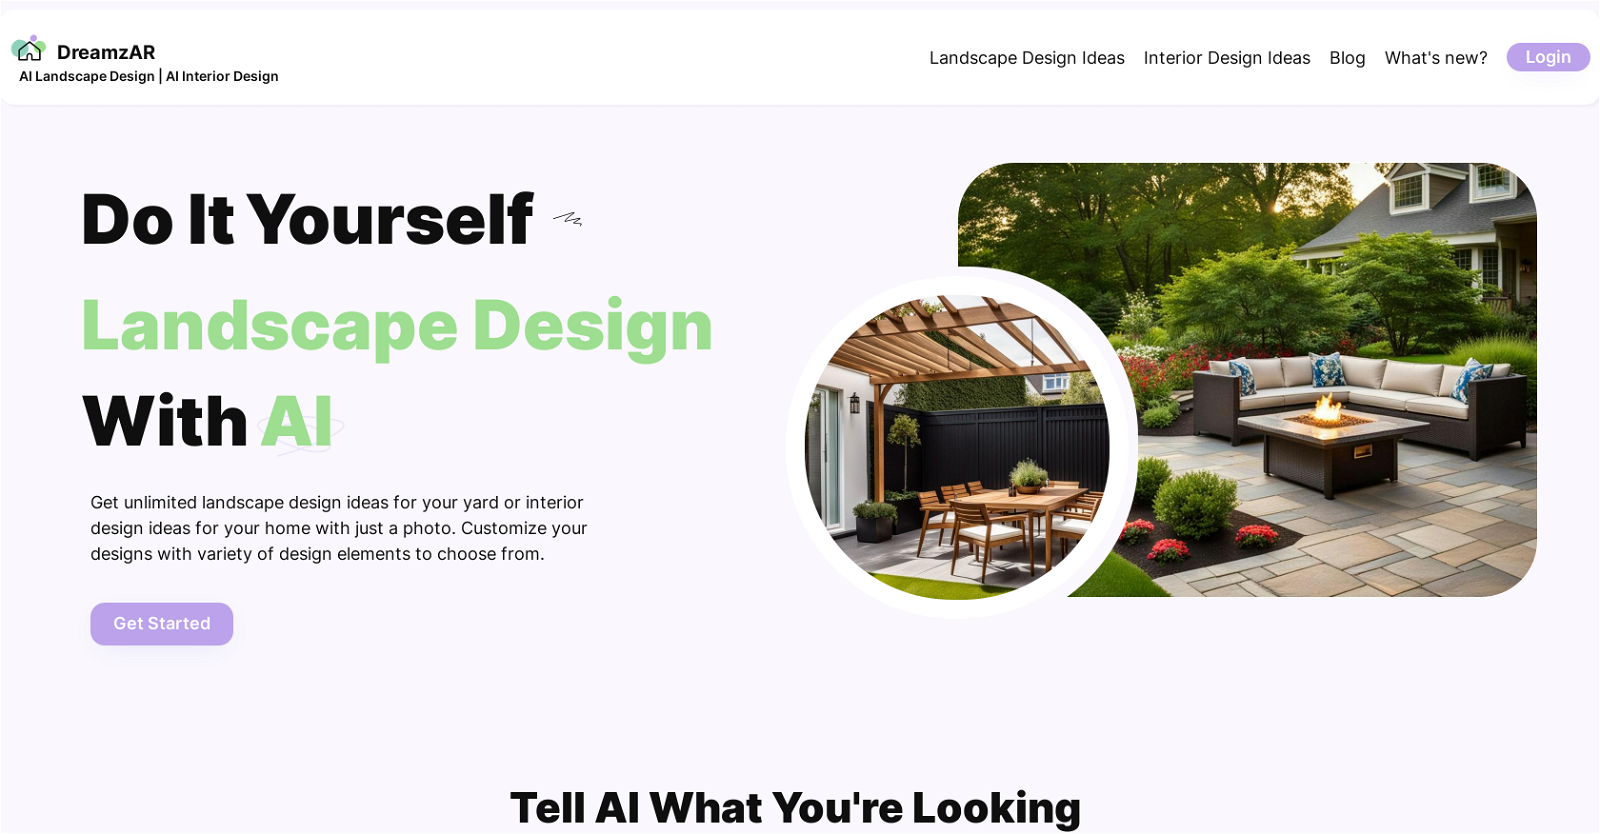 DreamzAR AI Landscape Design Ideas website